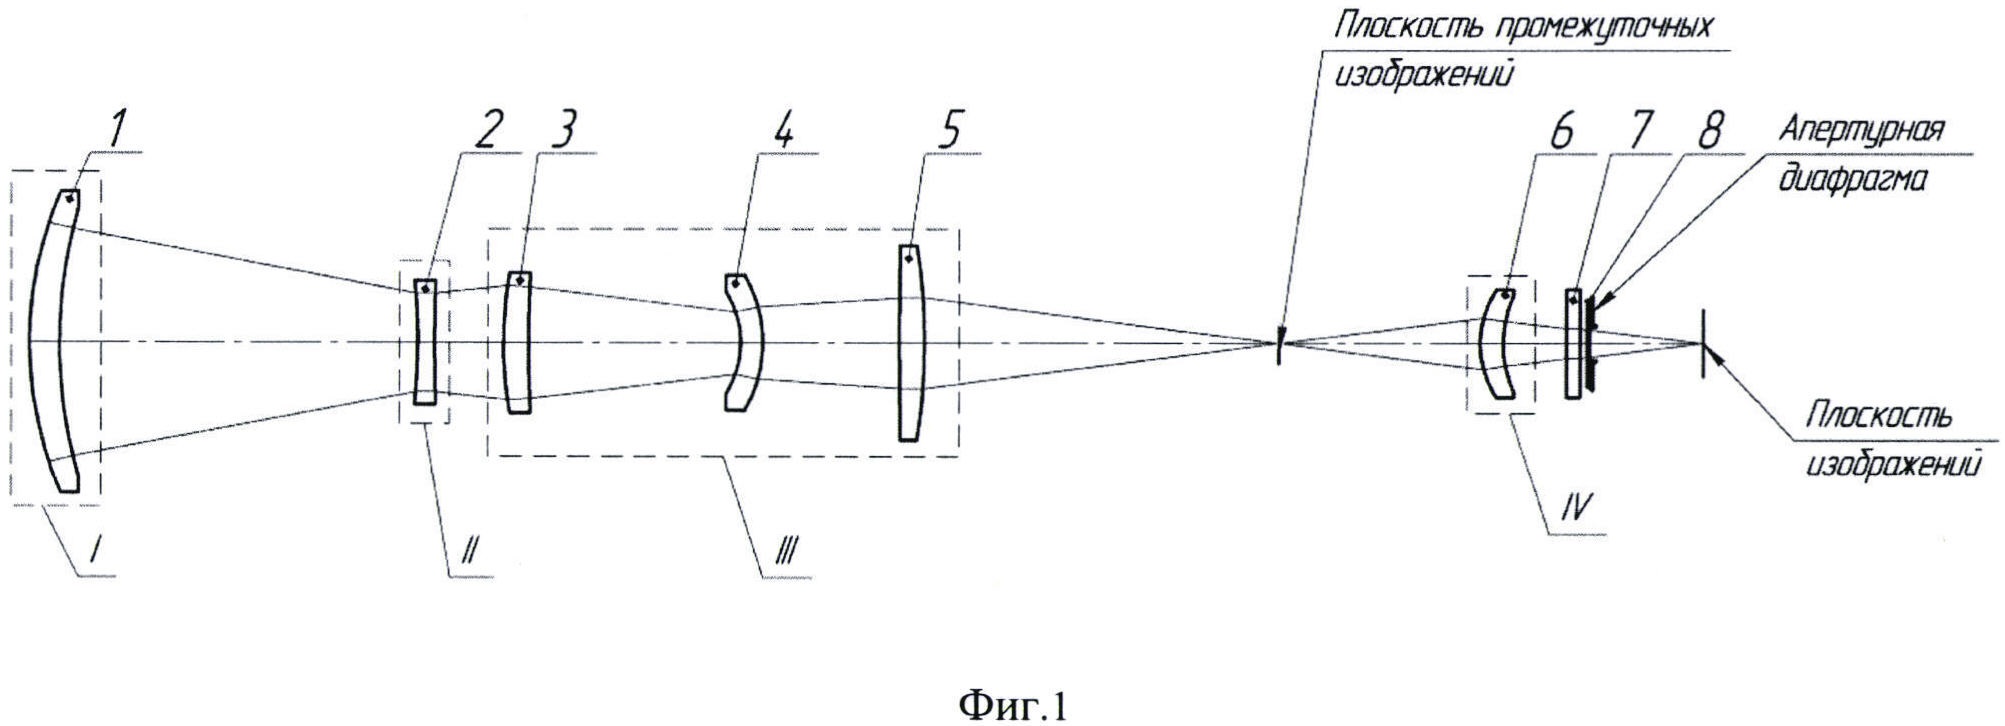 Инфракрасный объектив с двумя полями зрения и вынесенной апертурной диафрагмой